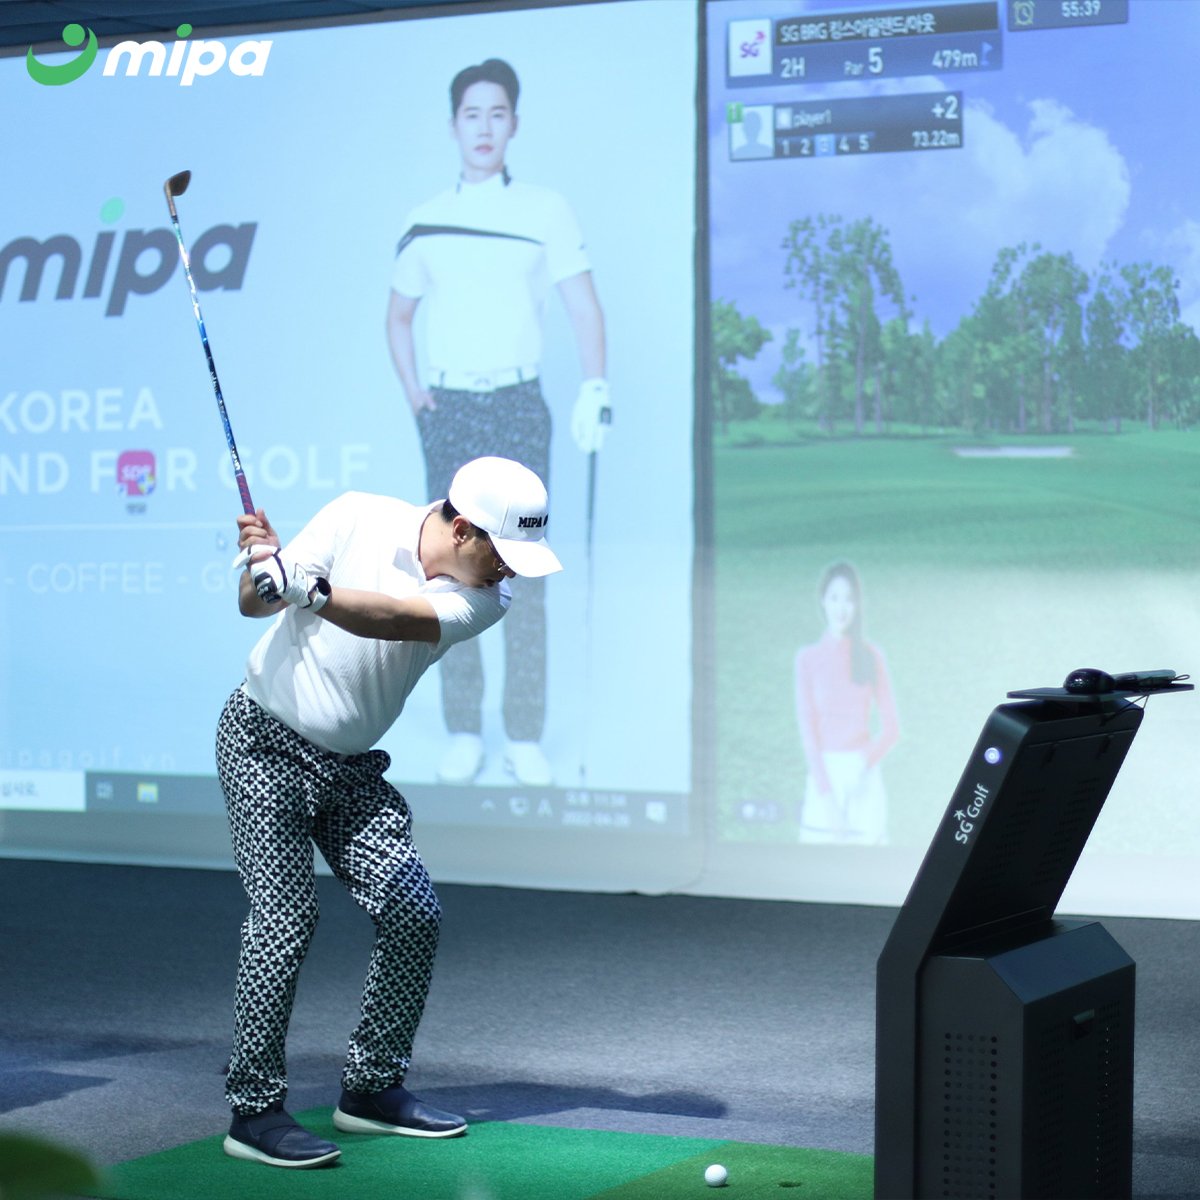 Điểm đến dành cho các golfer tại Le Coq Sportif, Mipa Golf với phòng tập golf 3D, áp dụng công nghệ SG Golf mới nhất của Hàn Quốc và không gian café sang trọng trong cửa hàng